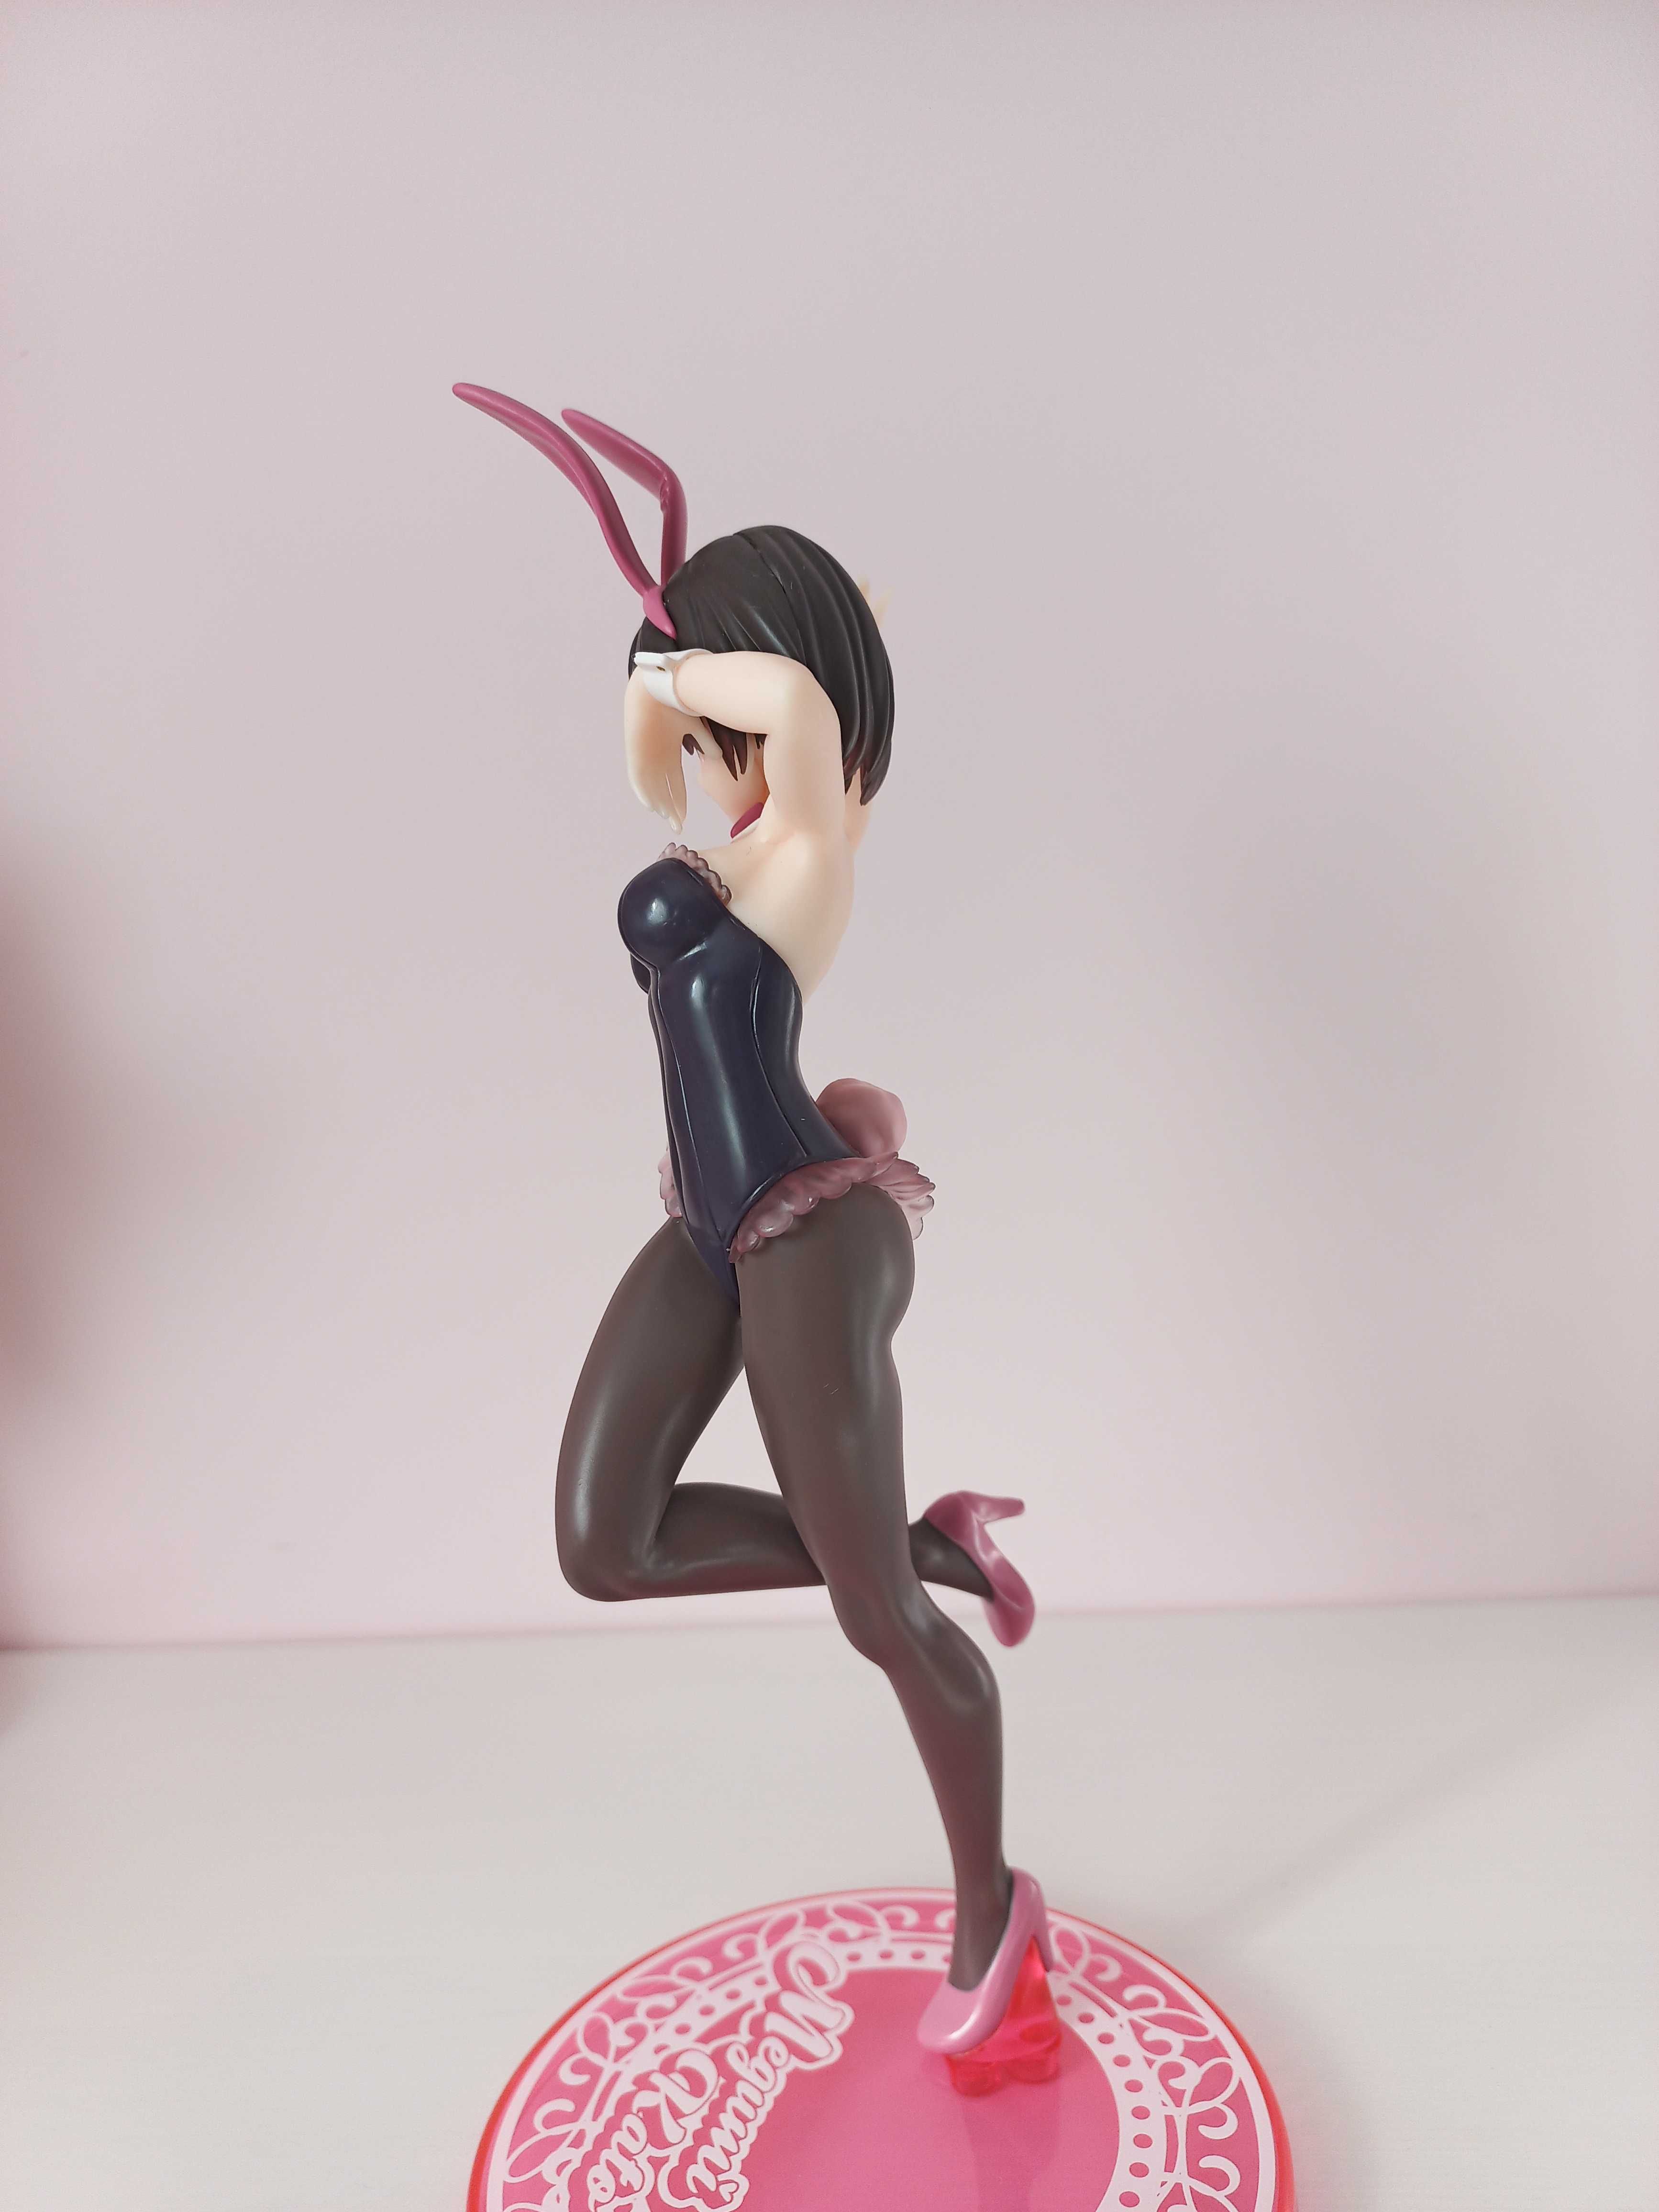 Figurka Saekano - Megumi Kato Bunny Ver.